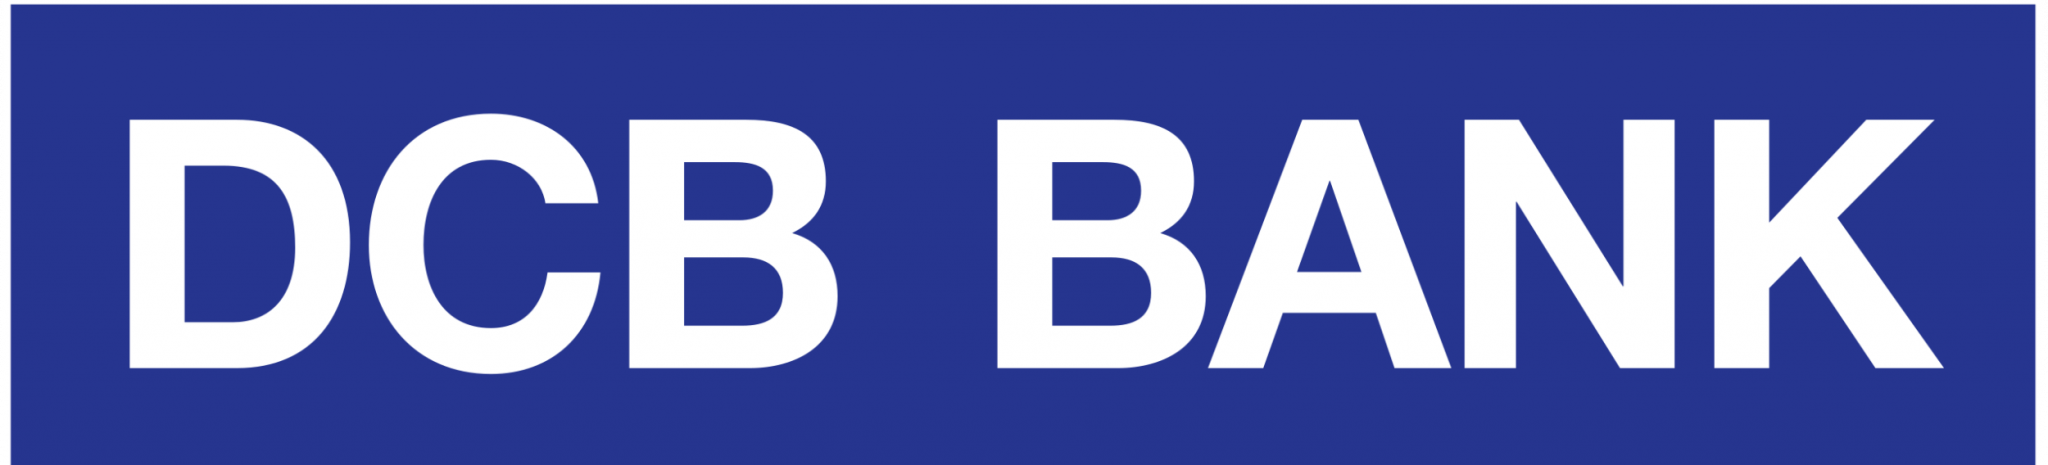 DCB-BANK-e1662624204216-3-2048x465